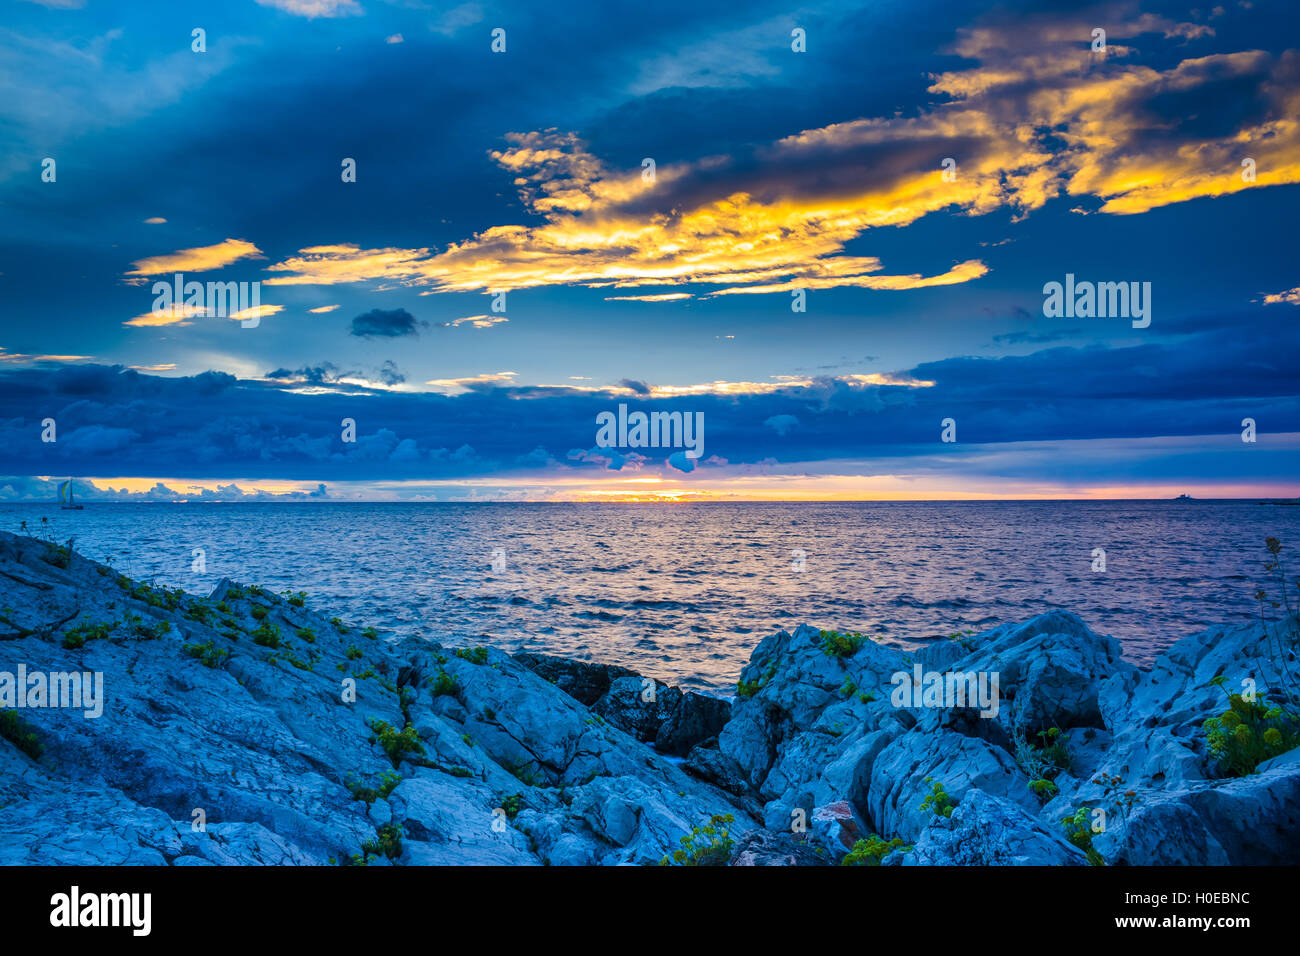 Colorful landscape photo of the Adriatic Sea Croatia Stock Photo